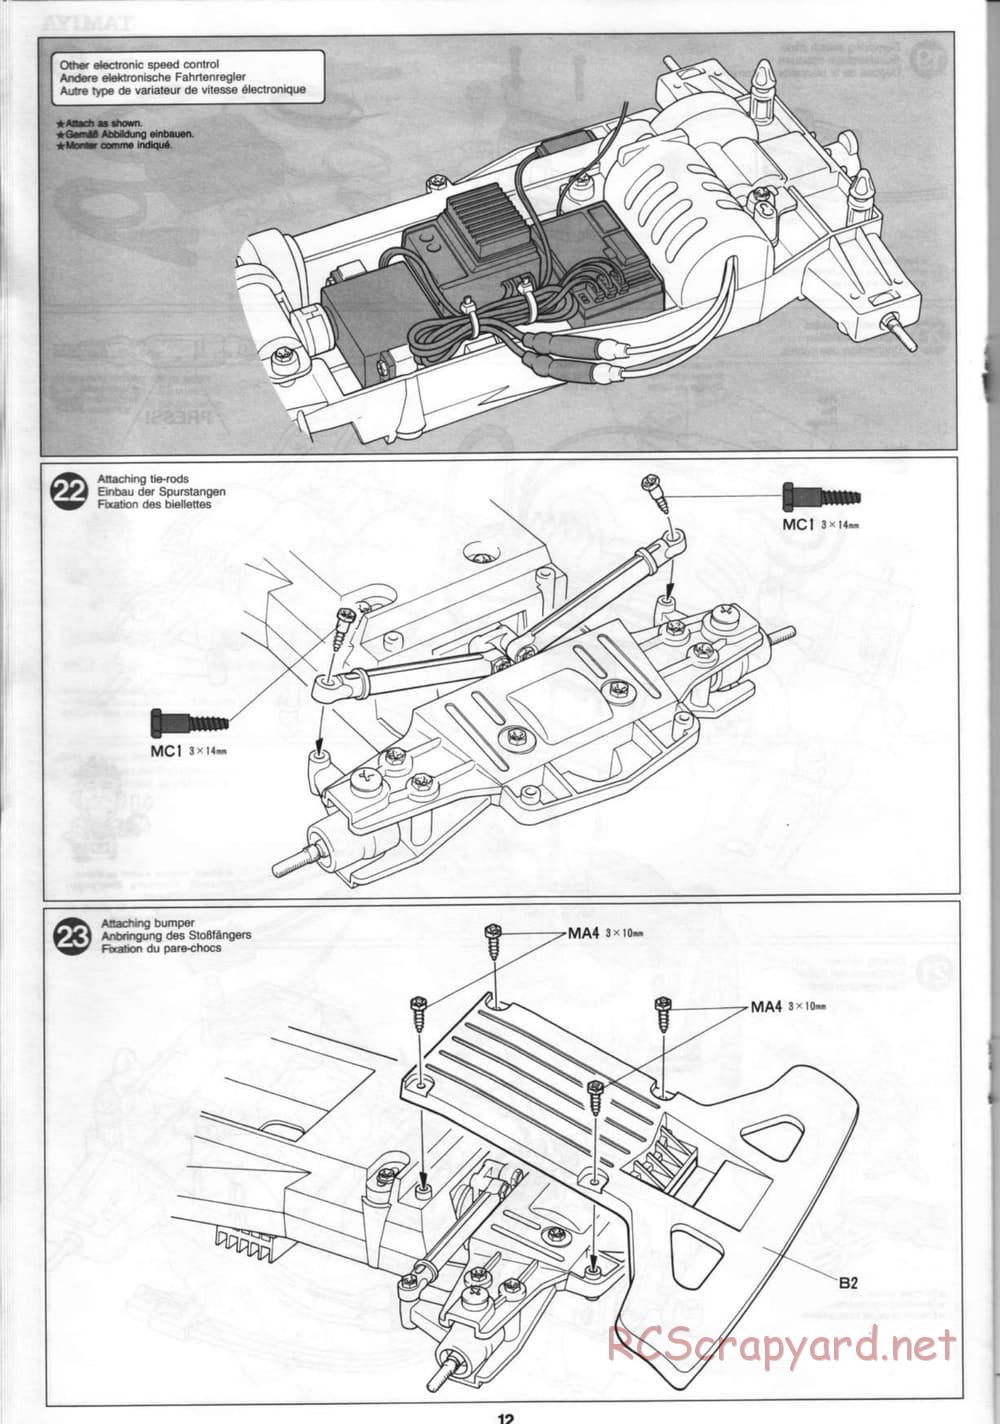 Tamiya - Thunder Blitz - Boy's 4WD Chassis - Manual - Page 12